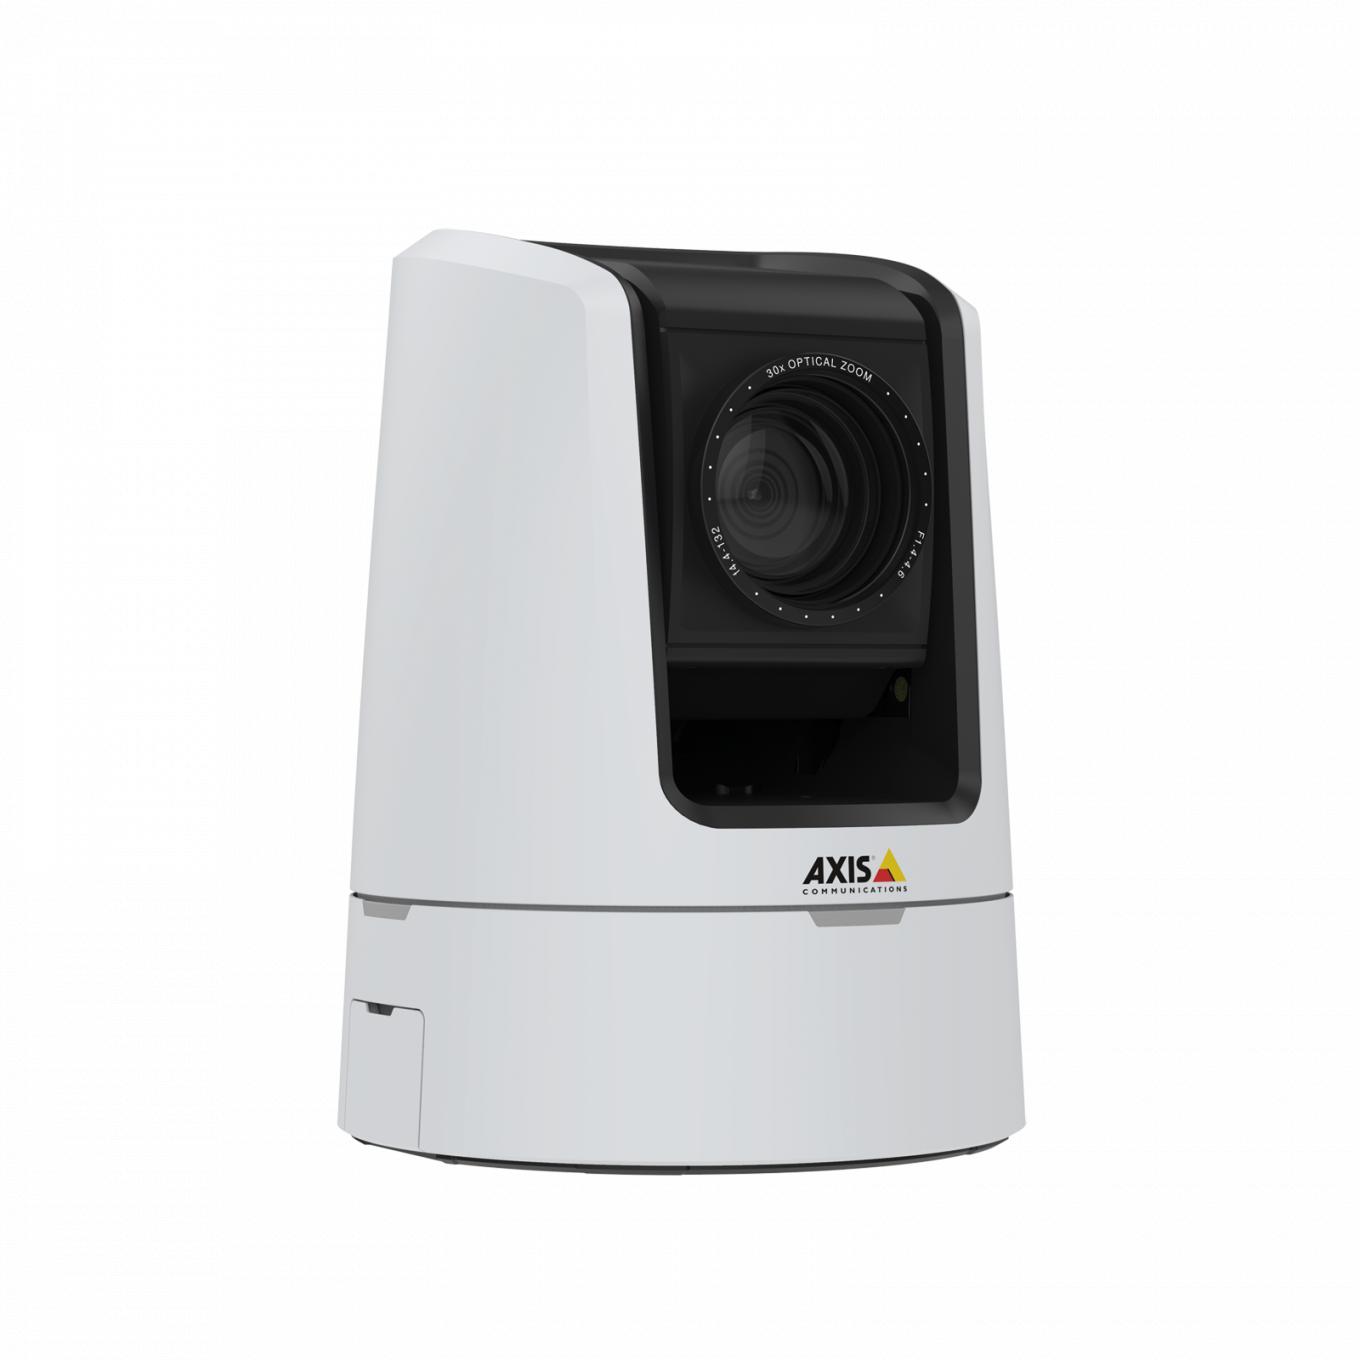 AXIS V5925 PTZ Network Camera propose une résolution HDTV 1080p de qualité diffusion.